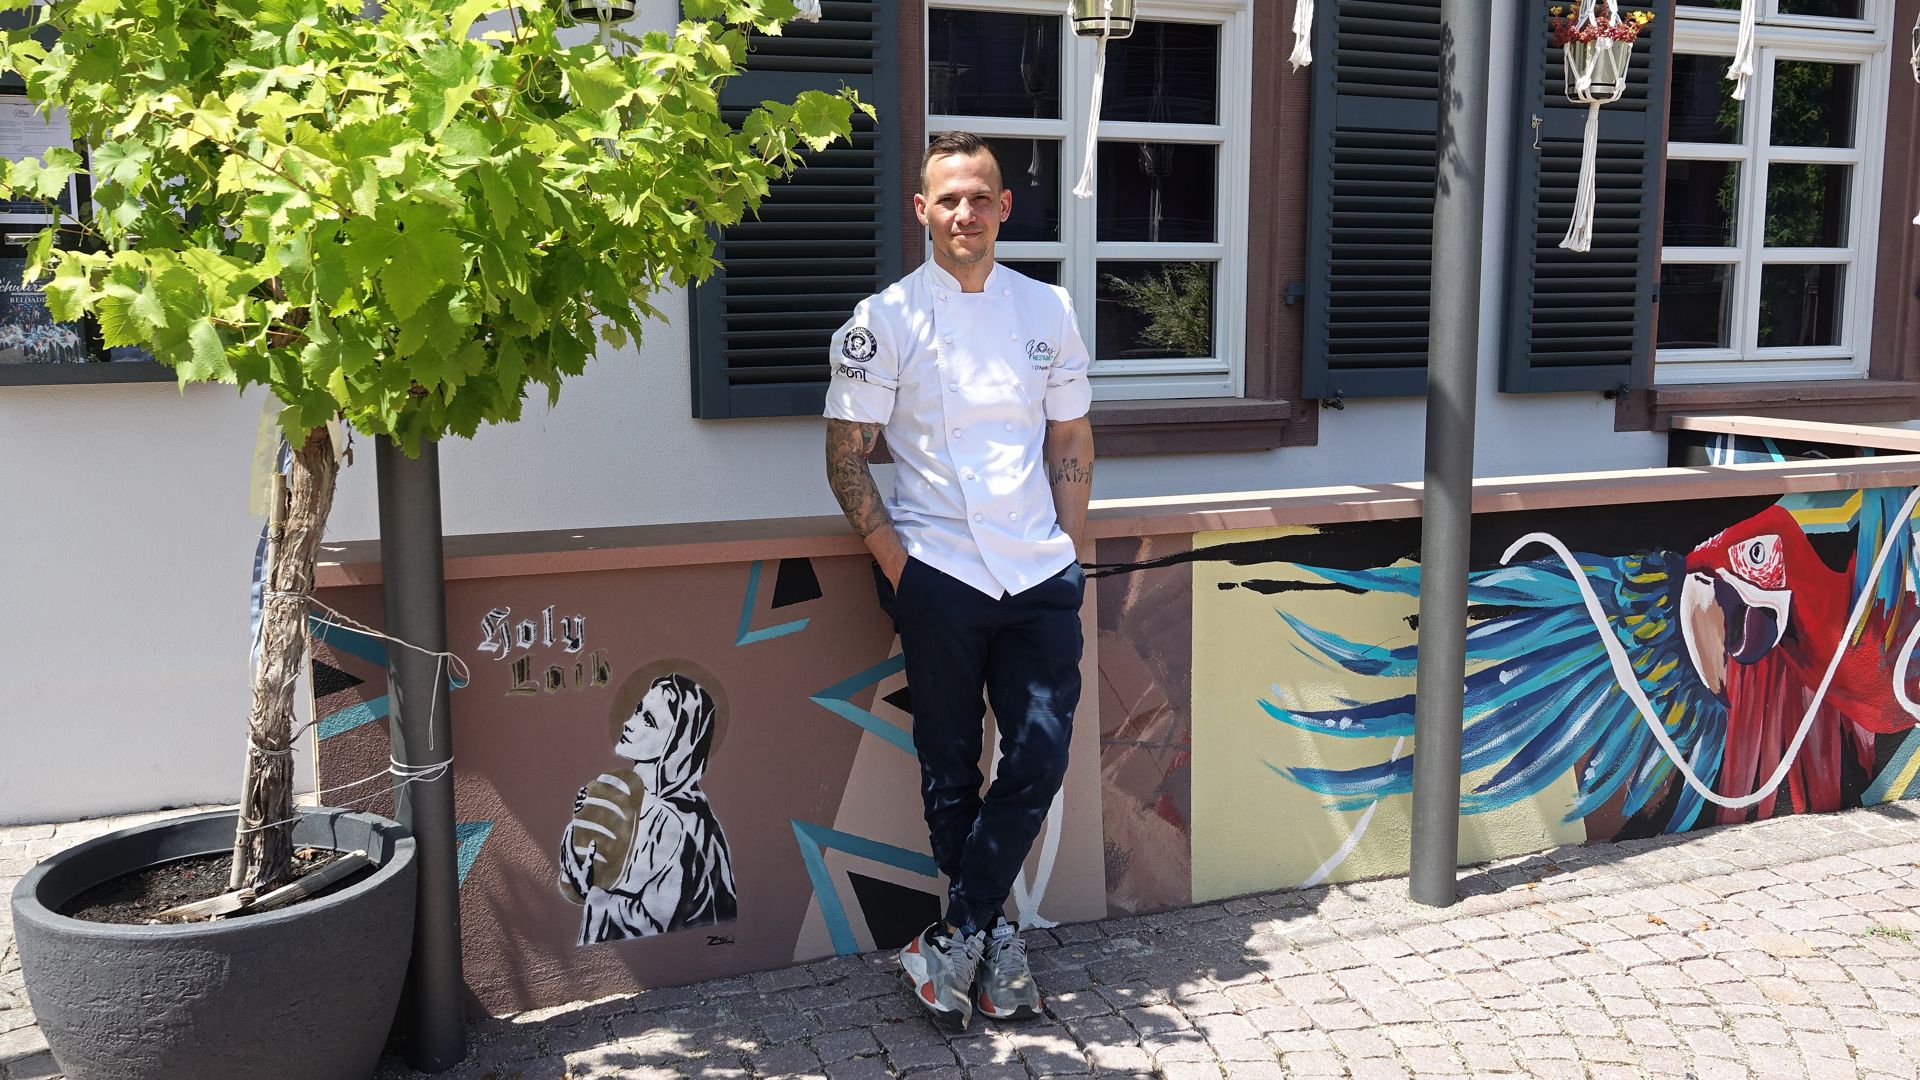 Francesco D’Agostino betreibt ein Restaurant und ein Bistro in Rheinbischofsheim. Im Hinterhof treffen sich dort Jung und Alt.